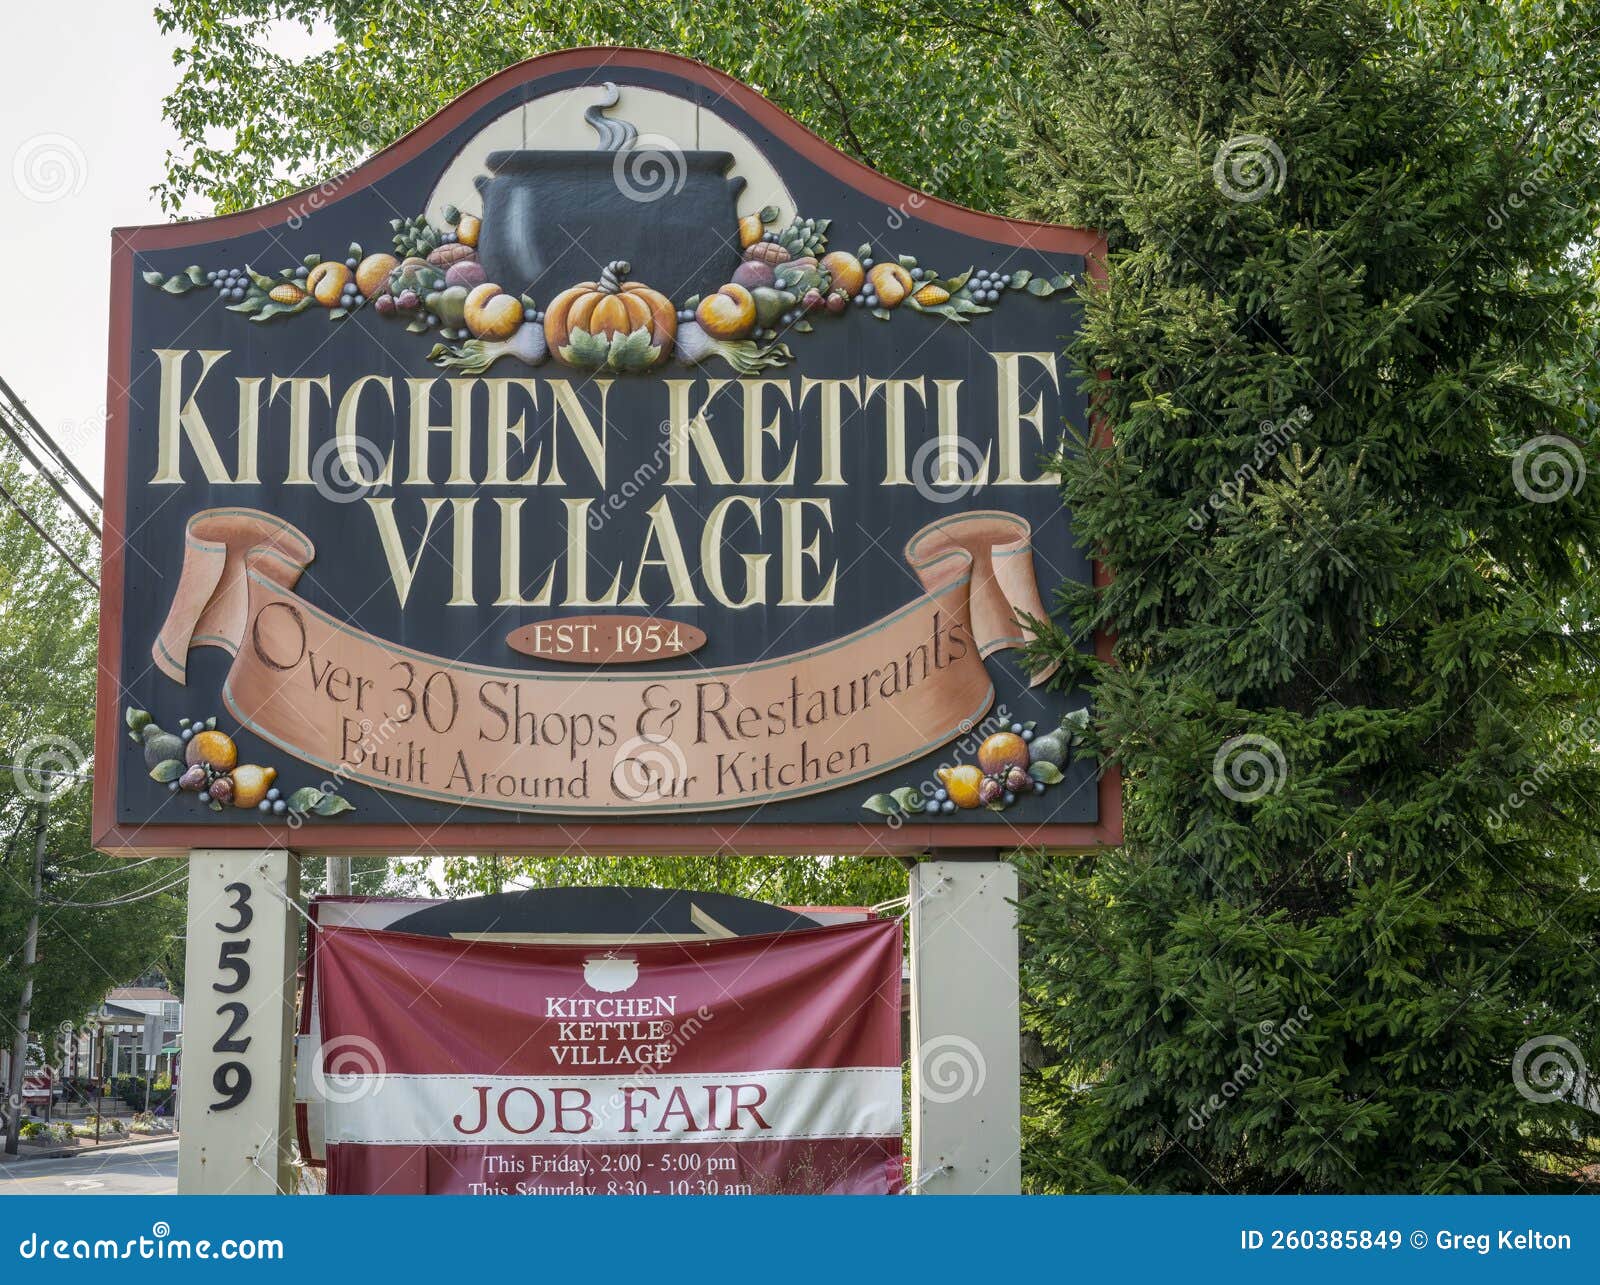 Kitchen Kettle Village 